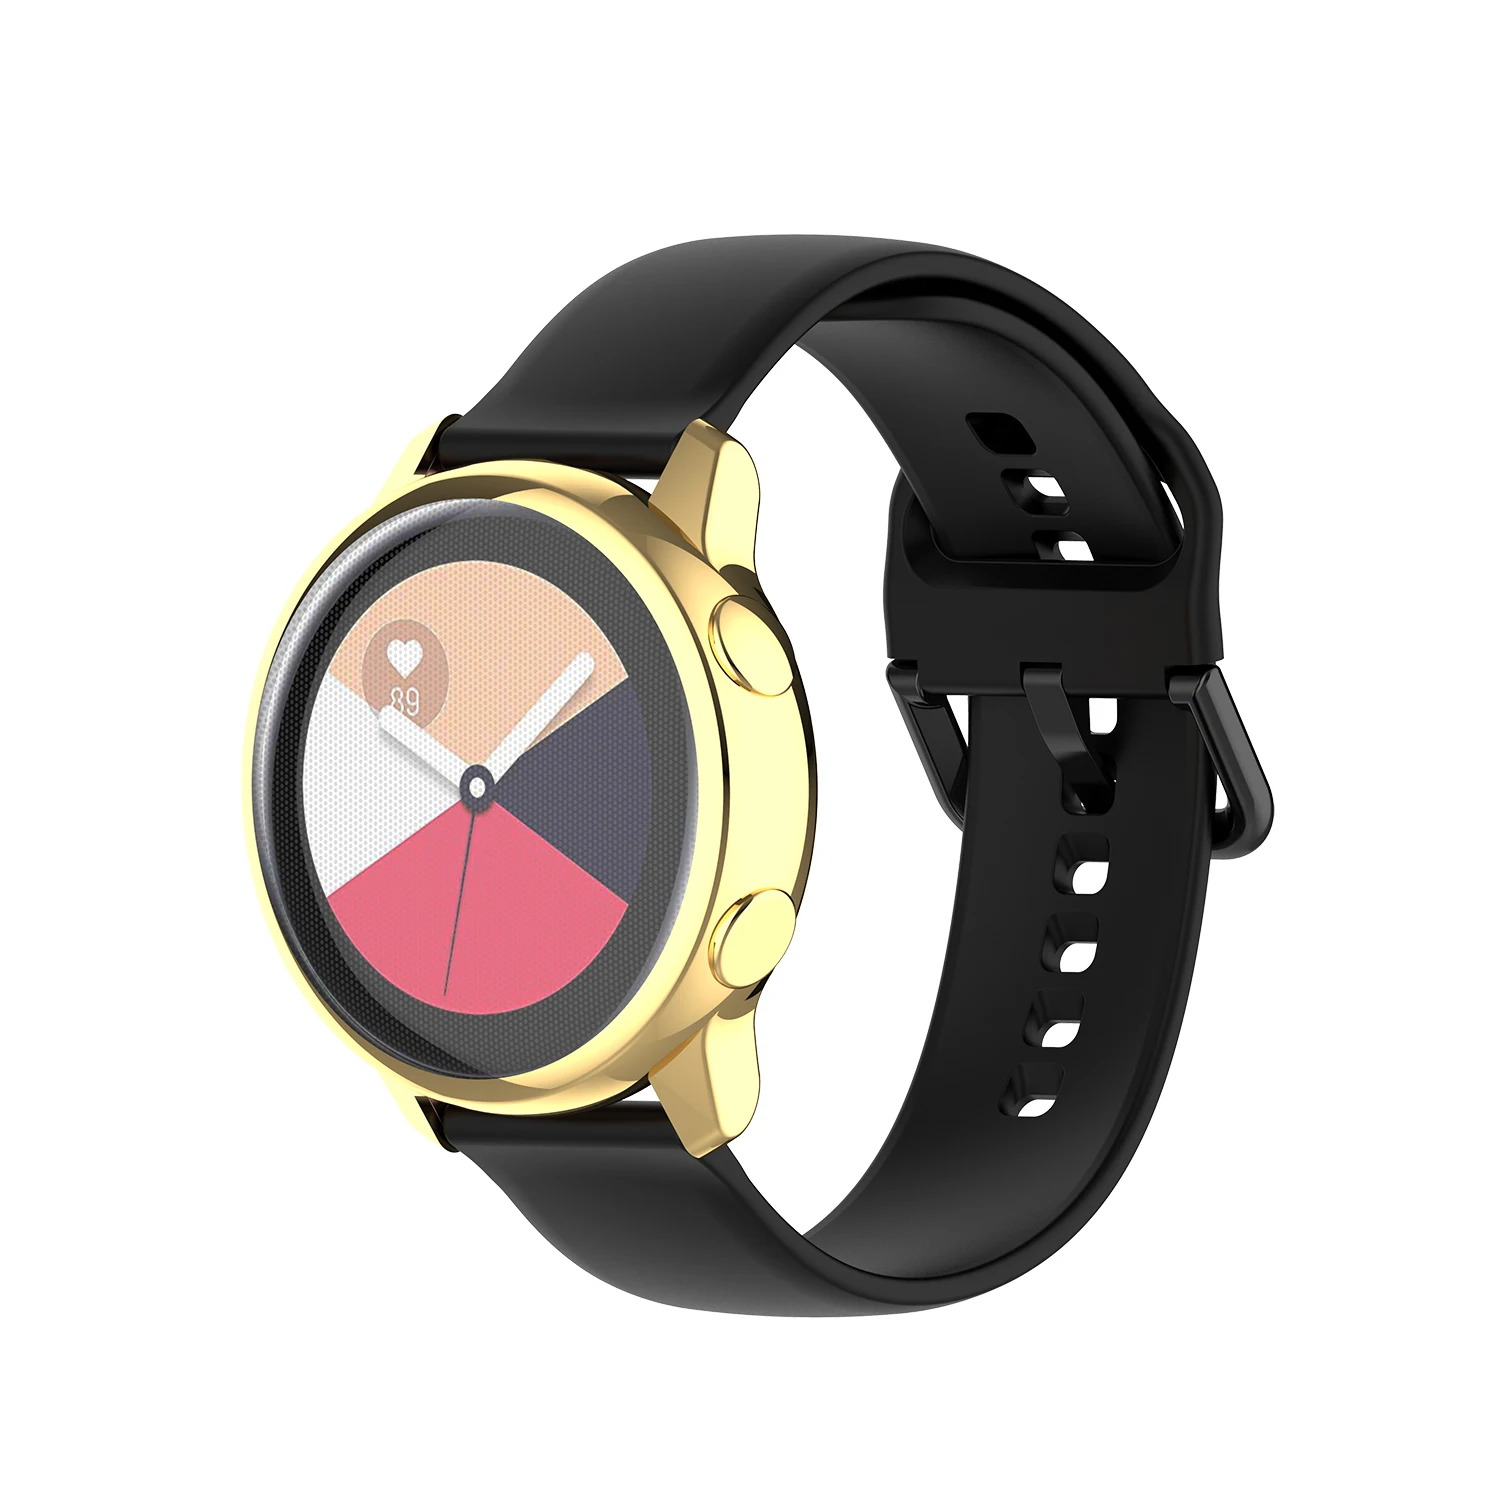 Galaxy watch Активный Чехол для samsung galaxy watch active/SM-R500 покрытие Красочный прозрачный ПК ТПУ мягкий пластиковый анти-осенний чехол